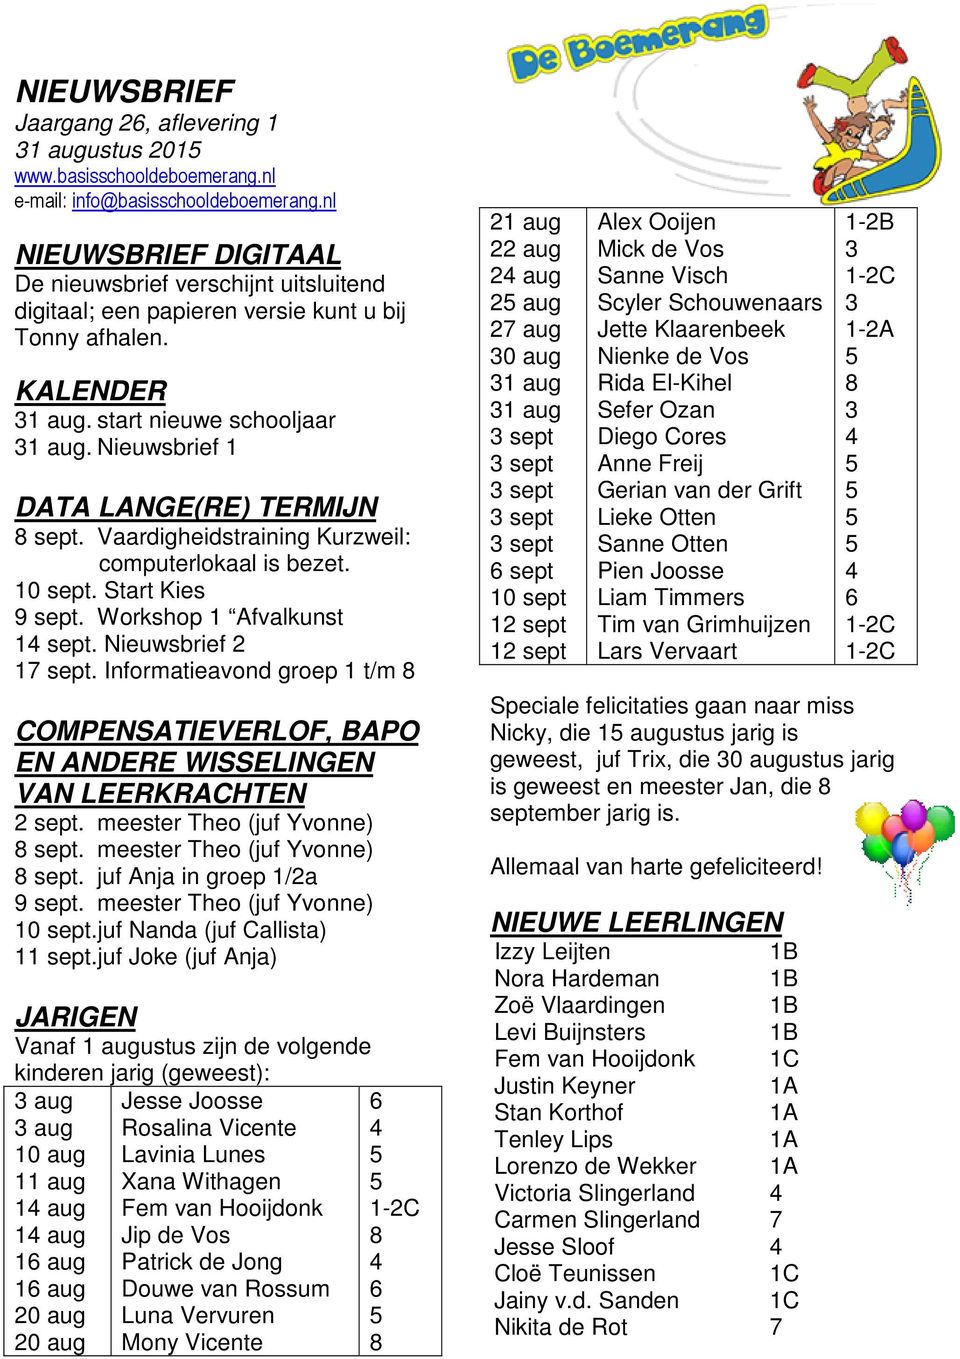 Nieuwsbrief 1 DATA LANGE(RE) TERMIJN 8 sept. Vaardigheidstraining Kurzweil: computerlokaal is bezet. 10 sept. Start Kies 9 sept. Workshop 1 Afvalkunst 1 sept. Nieuwsbrief 2 17 sept.